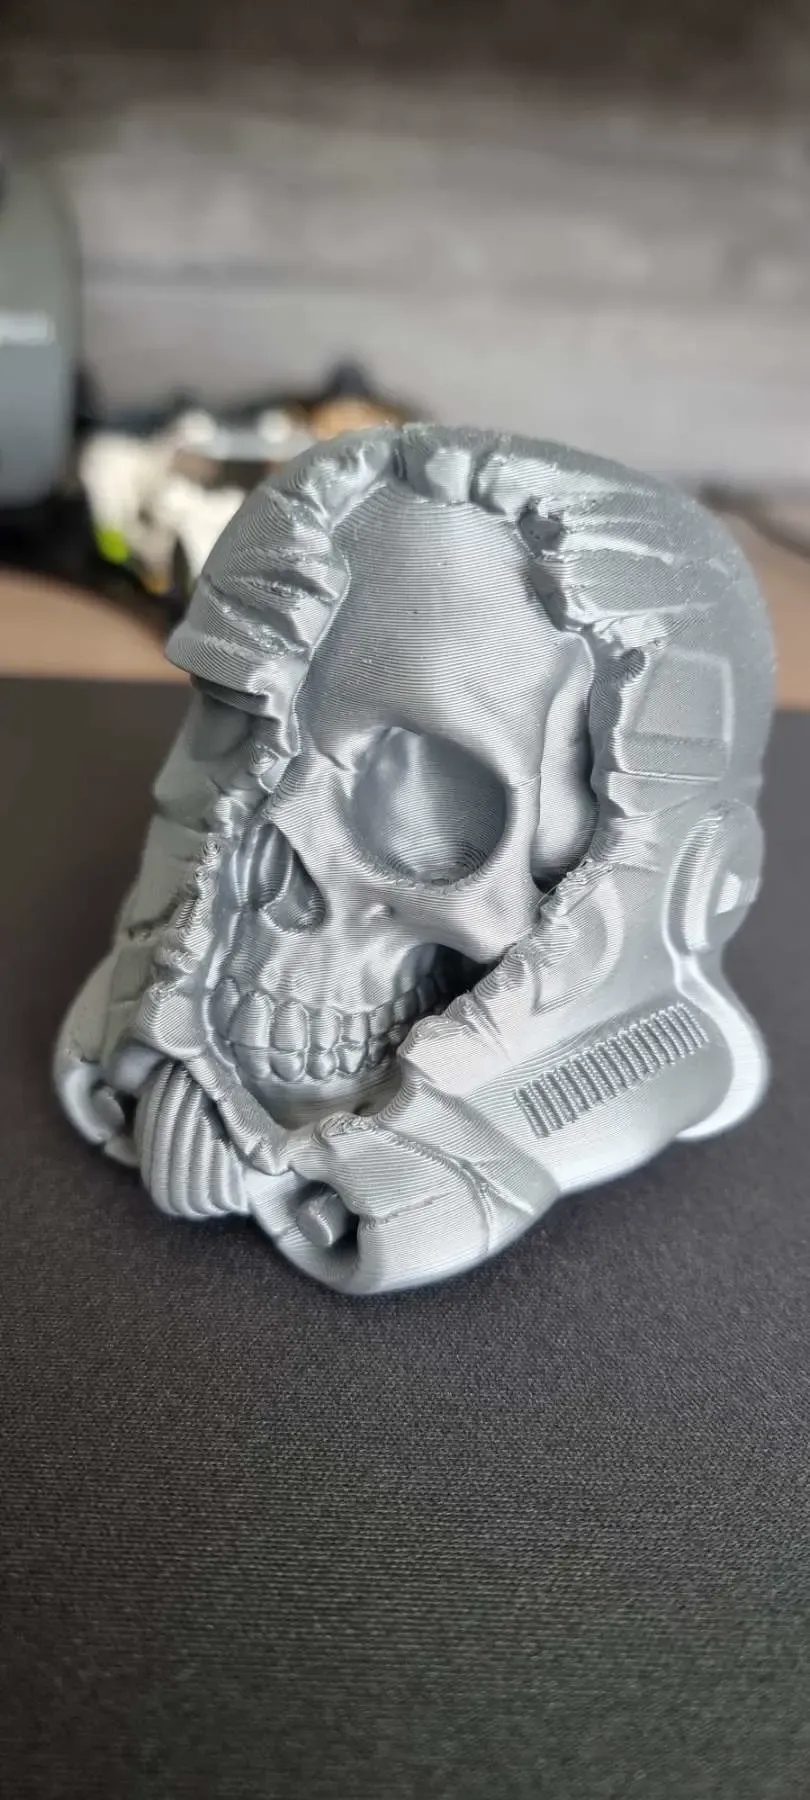 Stormtrooper skull